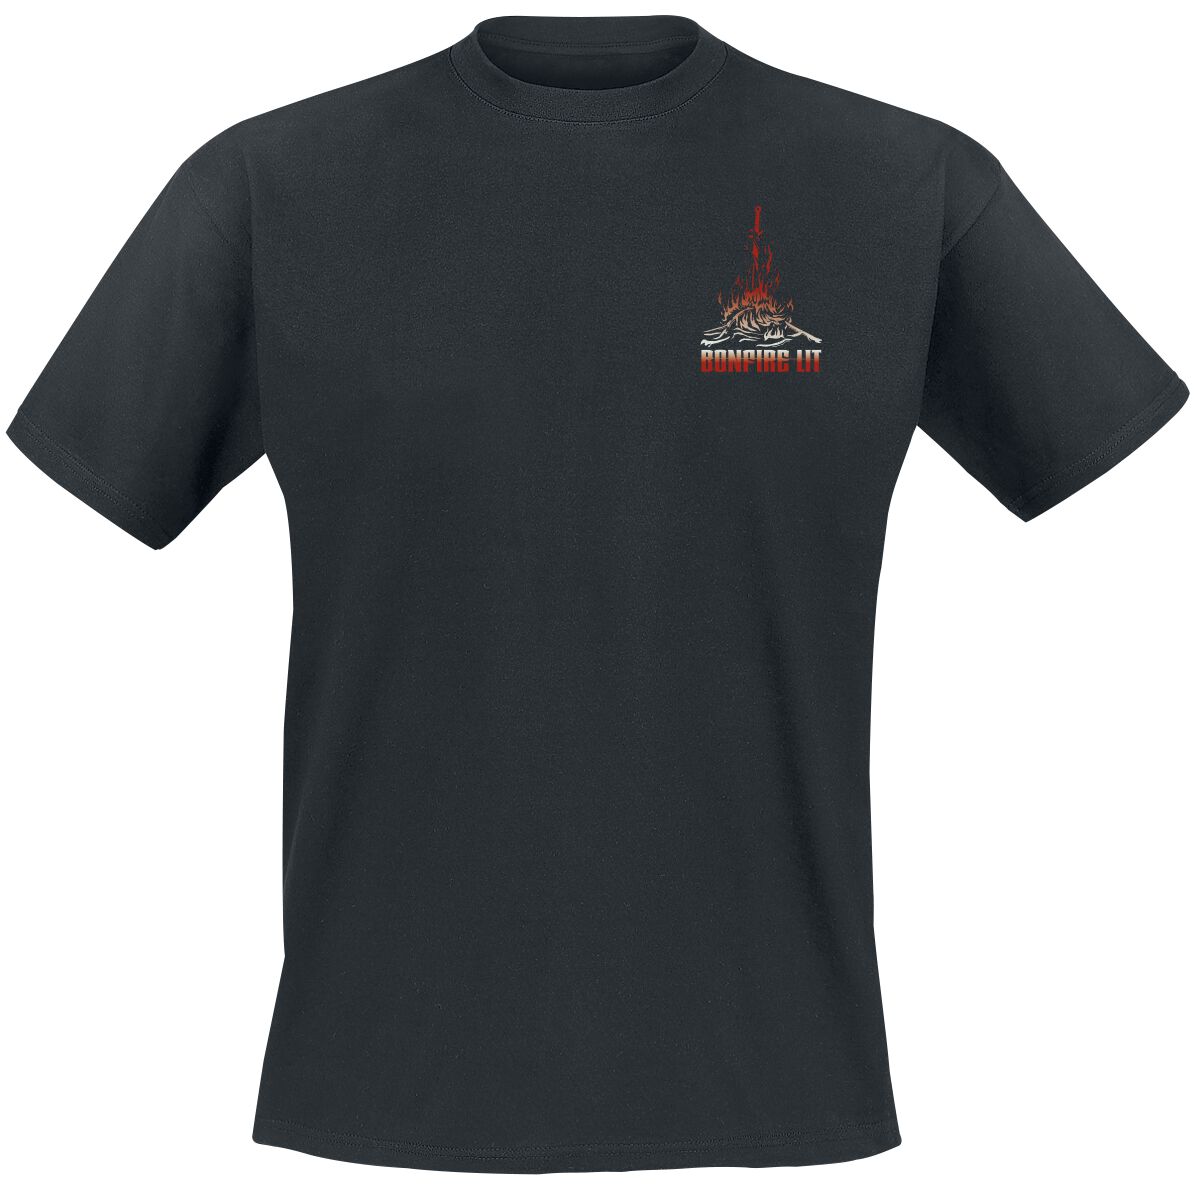 Dark Souls - Gaming T-Shirt - Bonfire Lit - S bis XXL - für Männer - Größe S - schwarz  - EMP exklusives Merchandise!